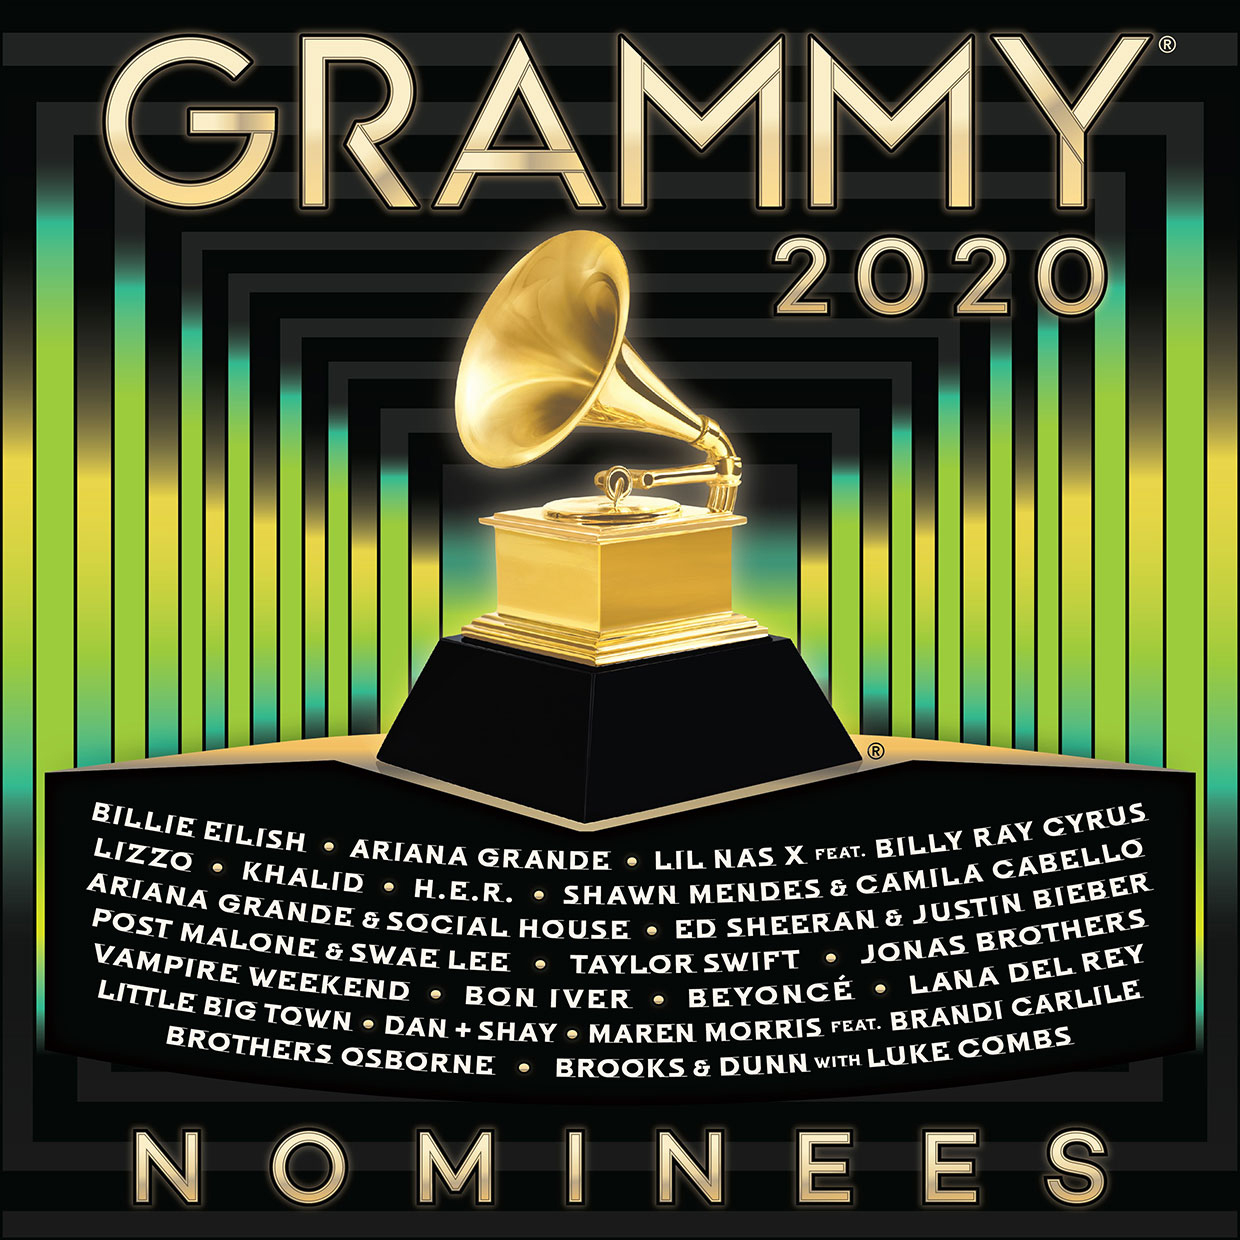 Álbum do Grammy Awards 2020 traz duas faixas da Ariana Grande; veja a